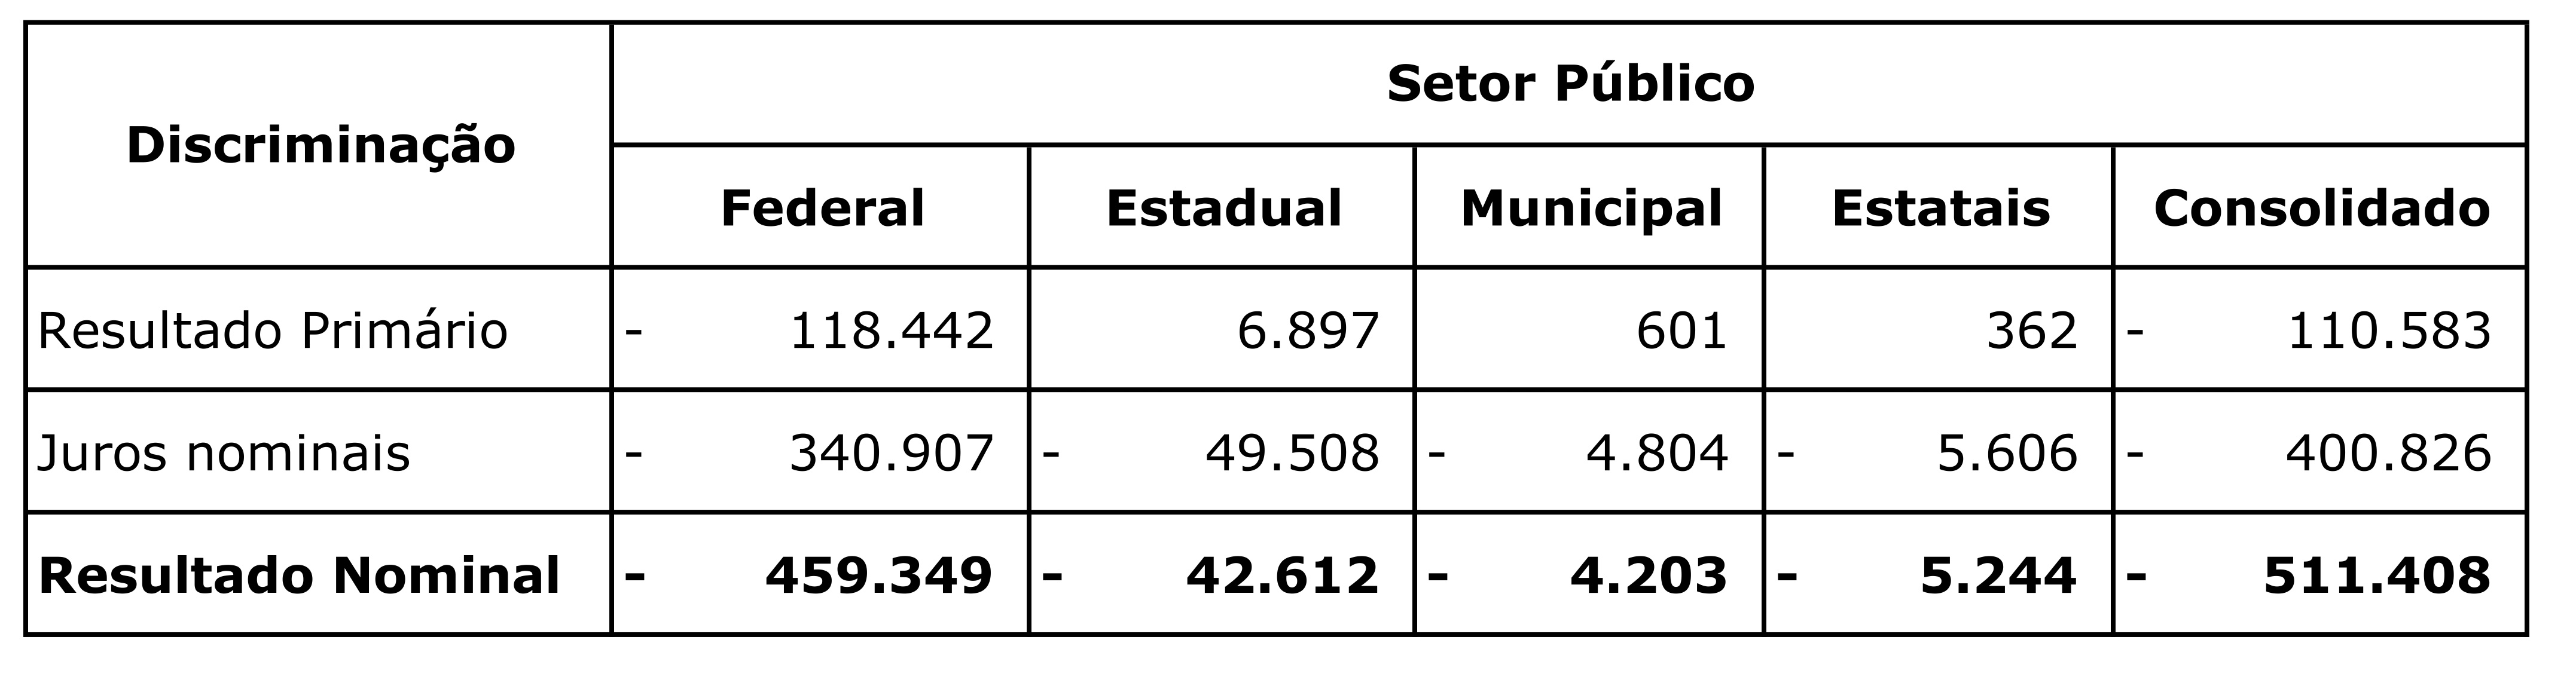 2.2_resultado_nominal_setor_publico_consolidado